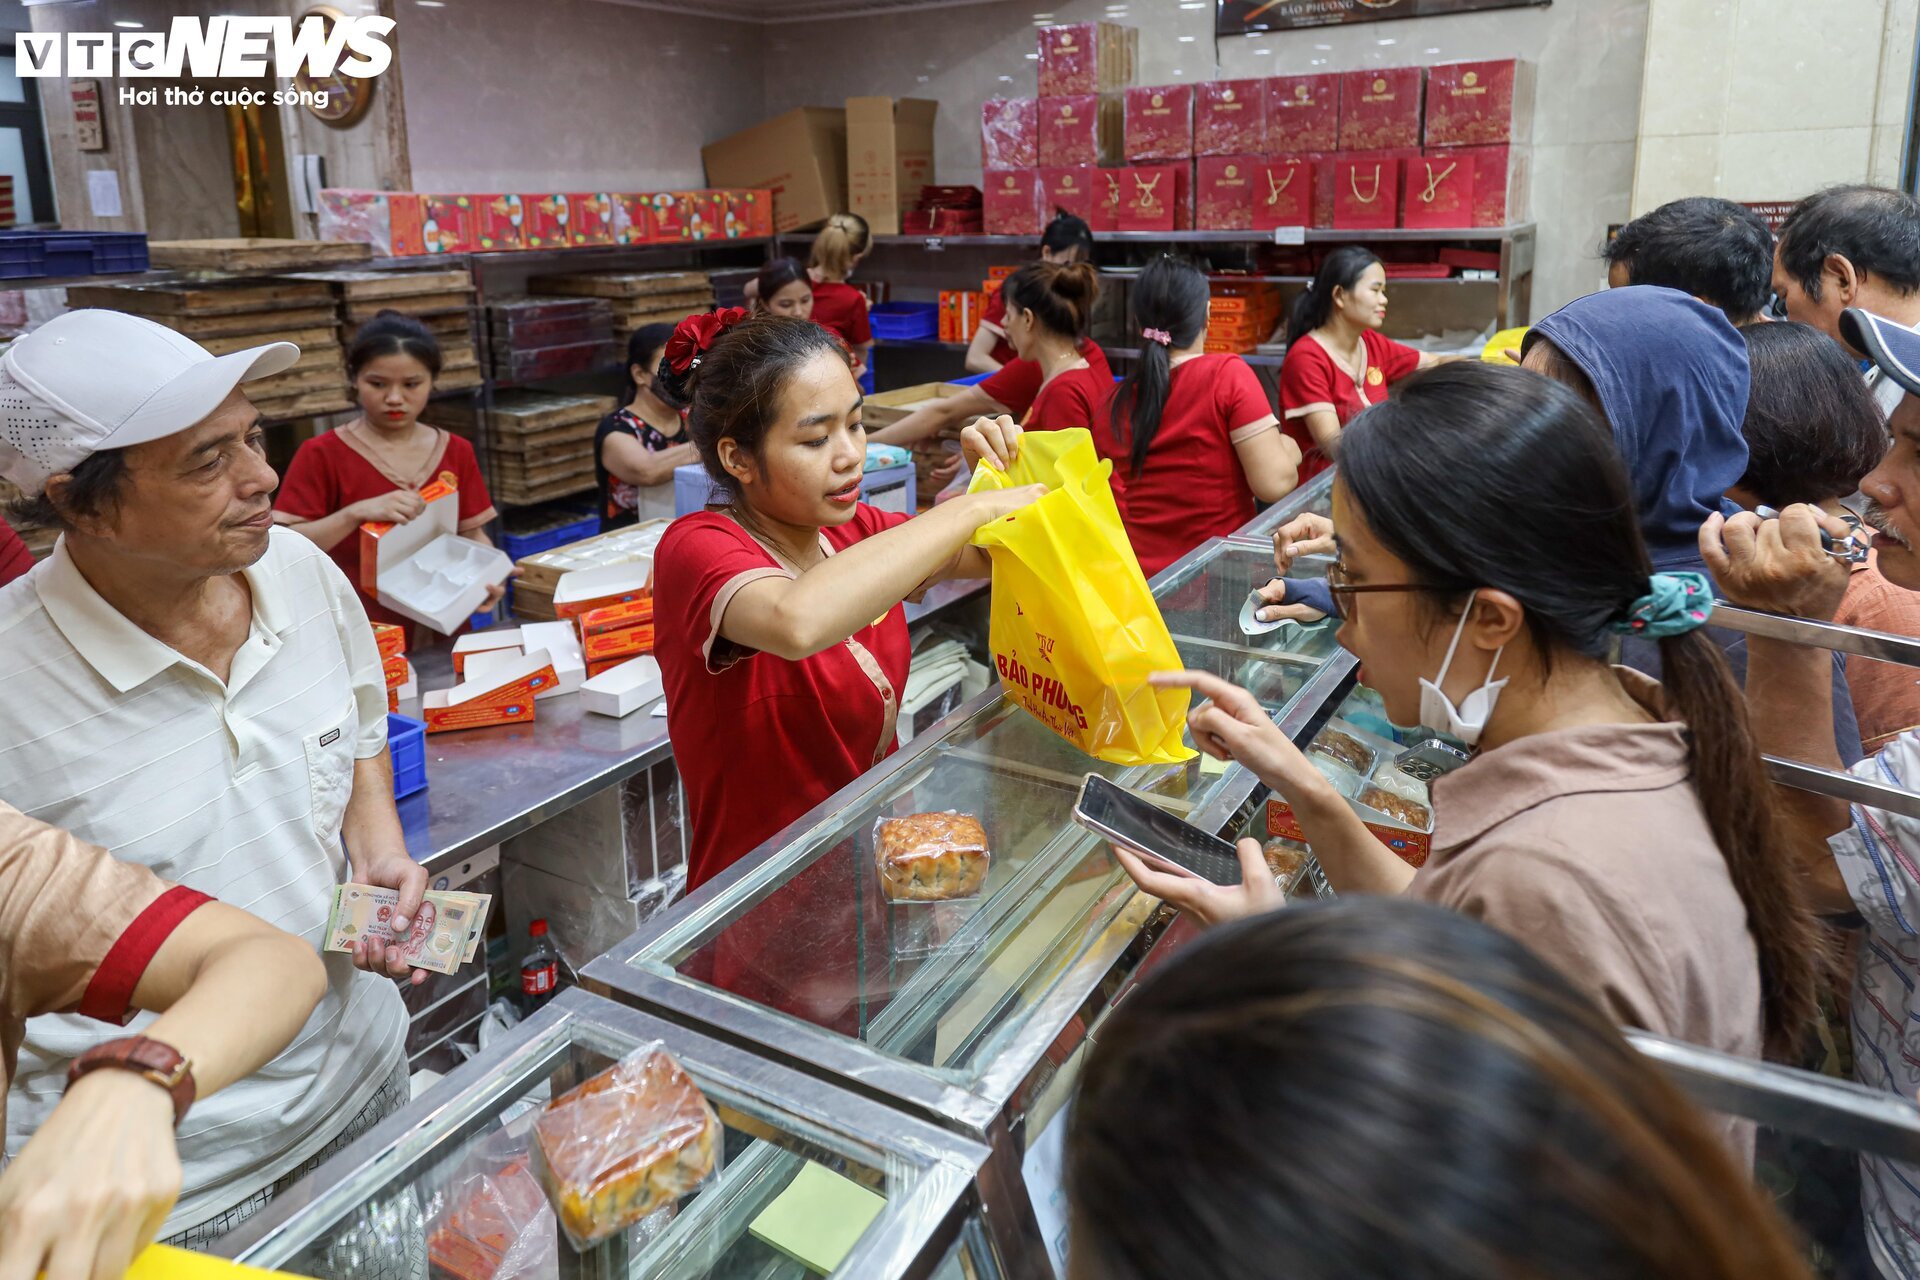 Hàng trăm người xếp hàng chờ mua bánh trung thu ở Hà Nội - Ảnh 16.